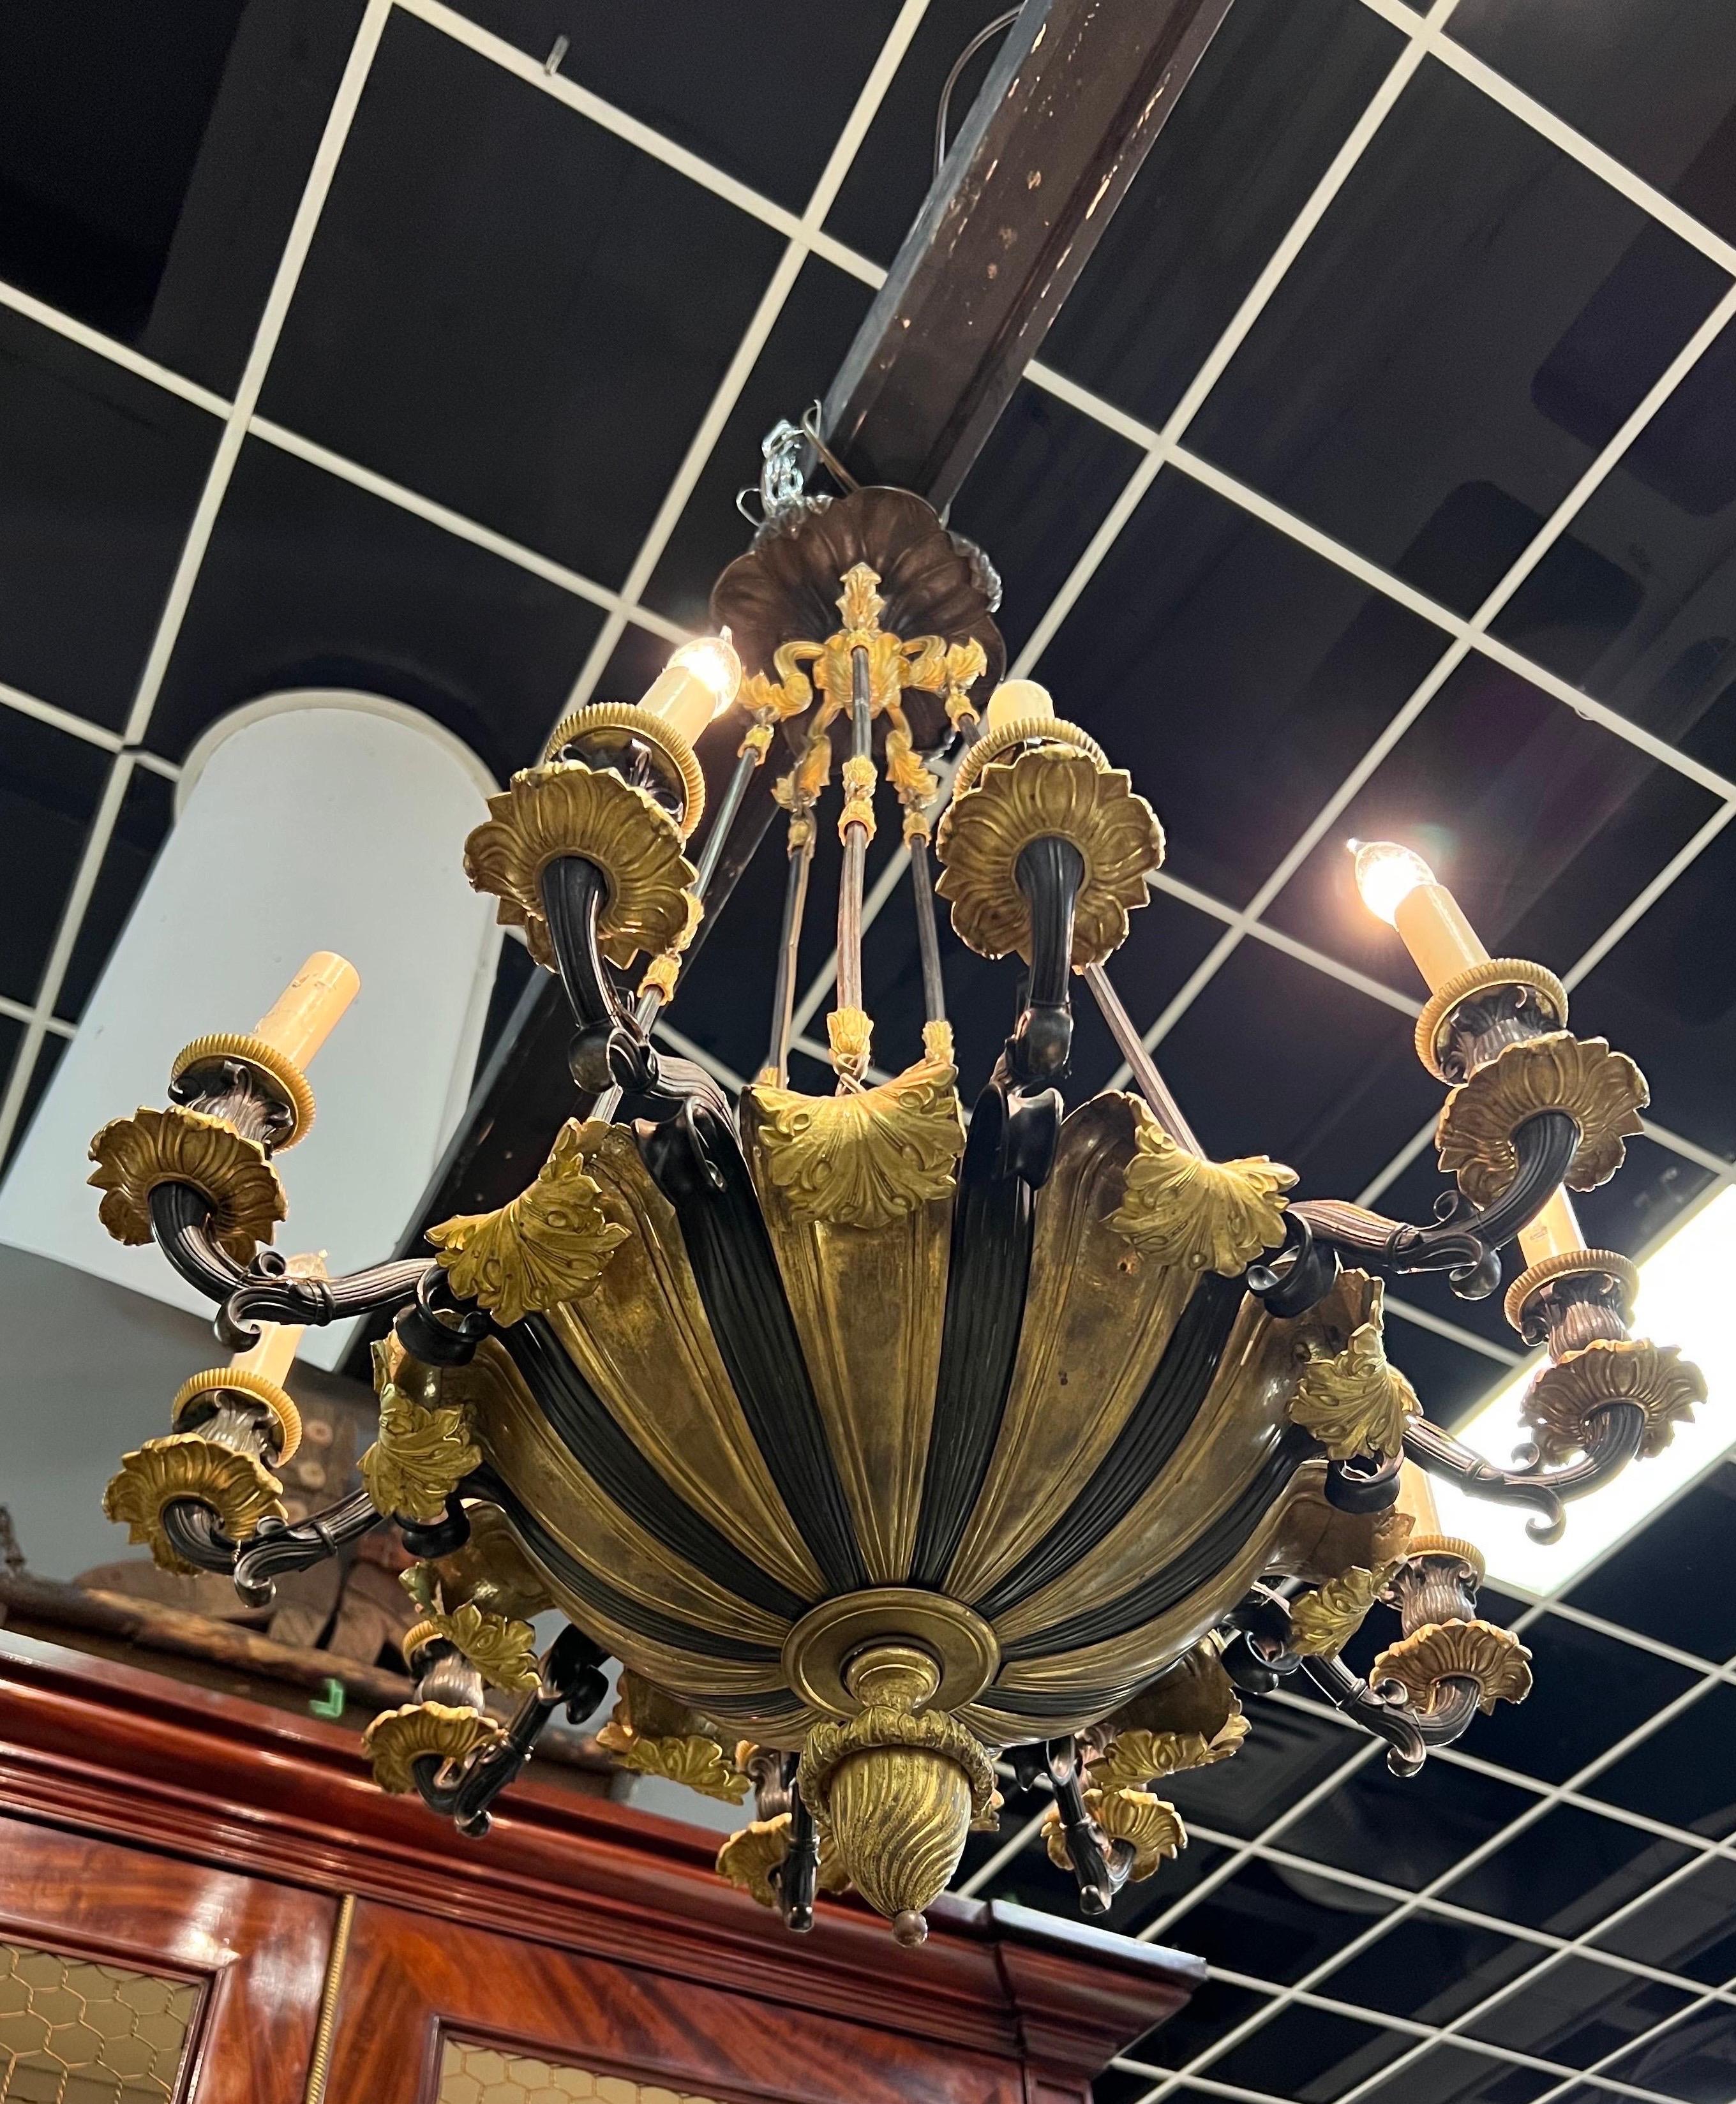 Unglaublicher Kronleuchter aus französischer Empire-Bronze des 19. Jahrhunderts, jetzt elektrifiziert. 10 patinierte Arme, getrennt durch vergoldete Bronze, die in Blättern enden. 